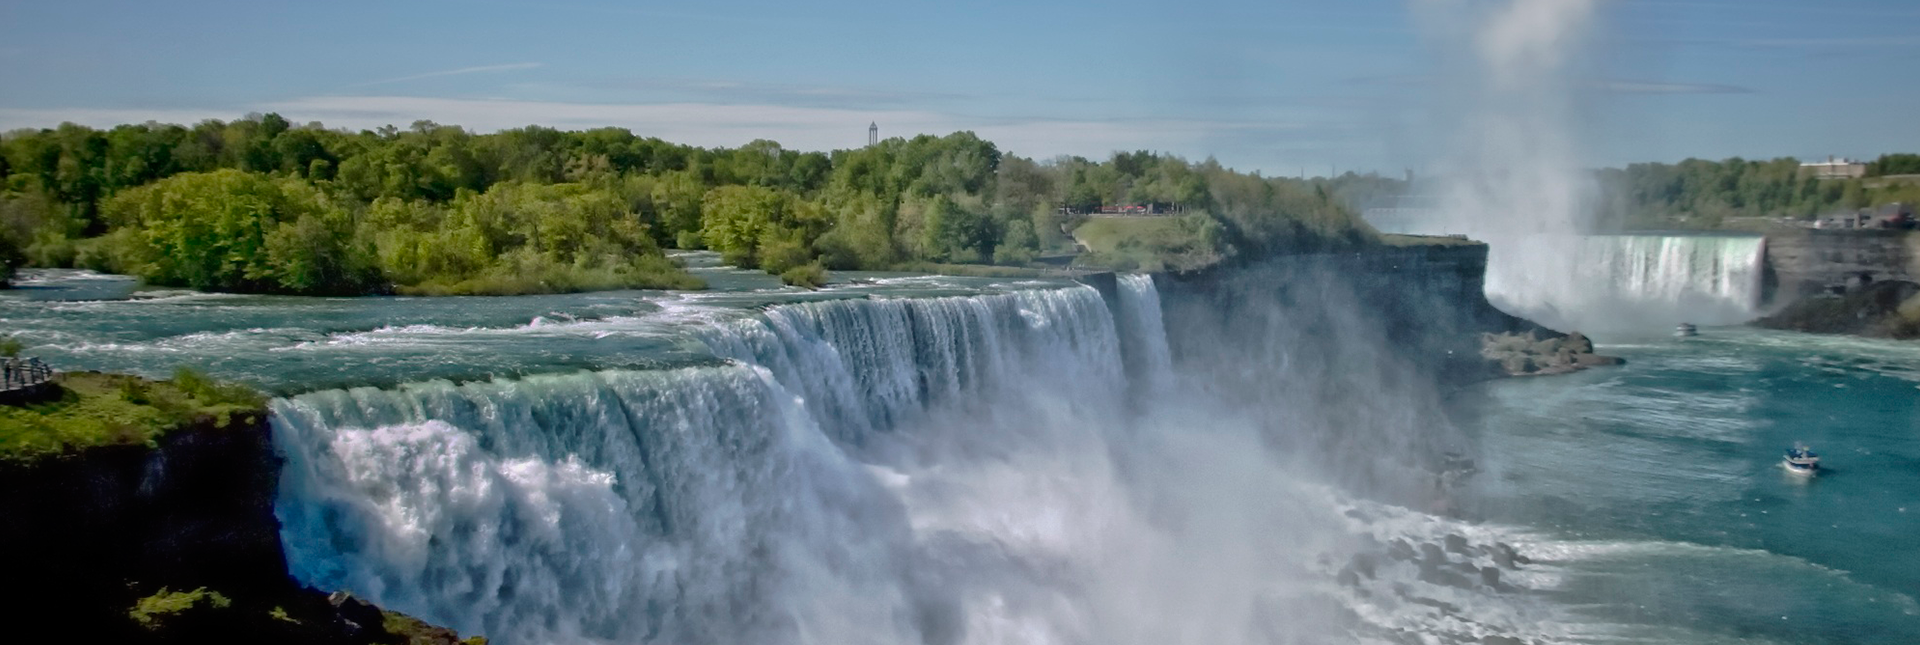 Excursión a Niagara Falls